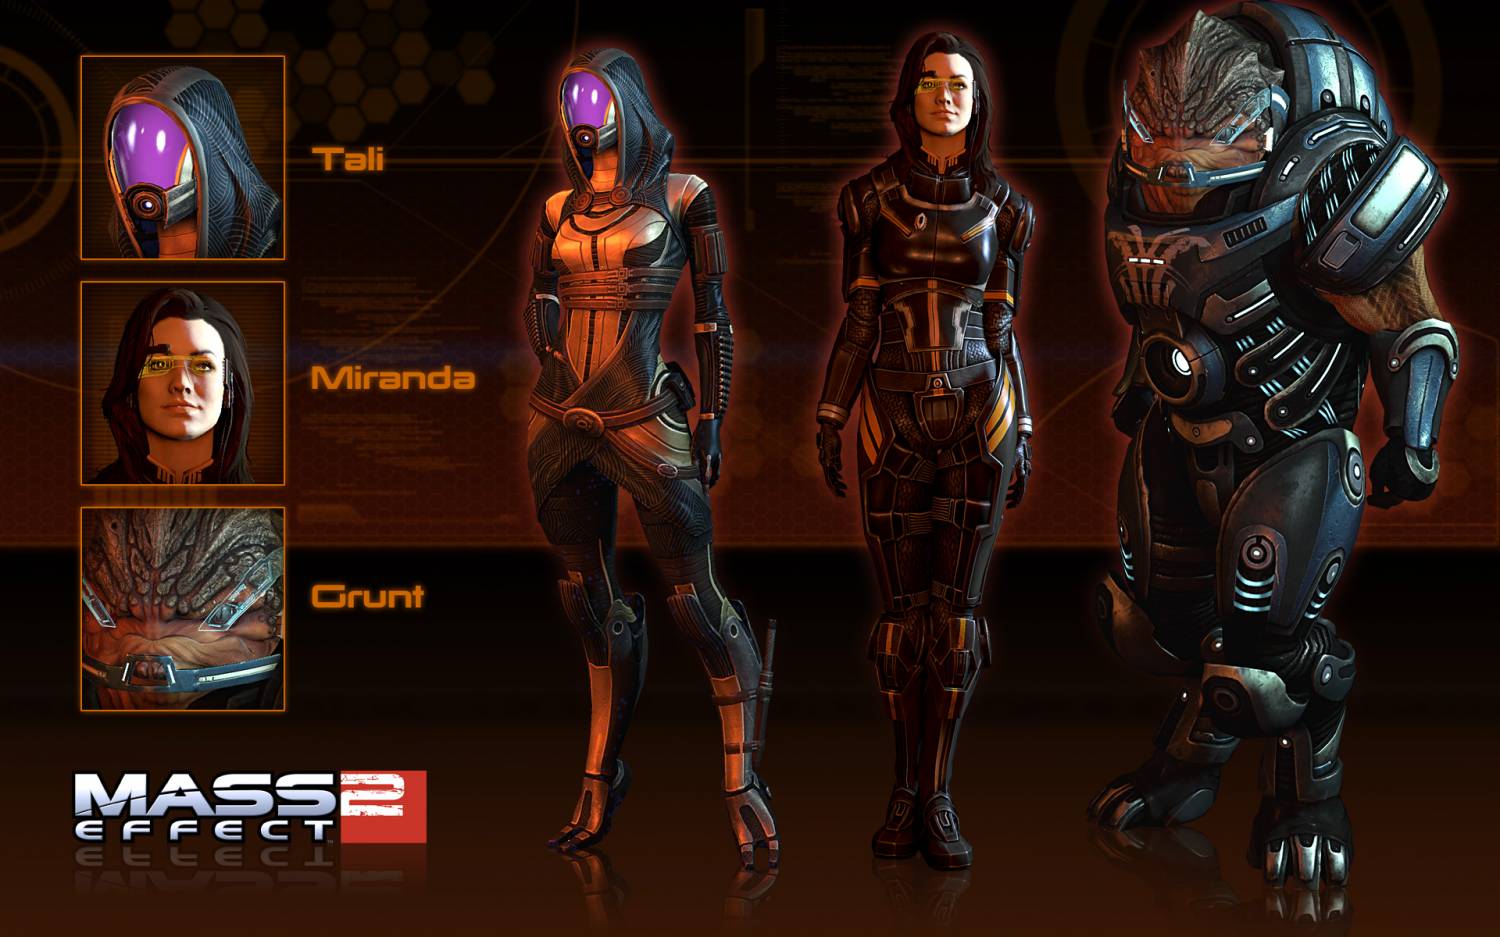 |Mass Effect 2| Набор вариантов внешнего вида 2 (Тали, Миранда, Грант)